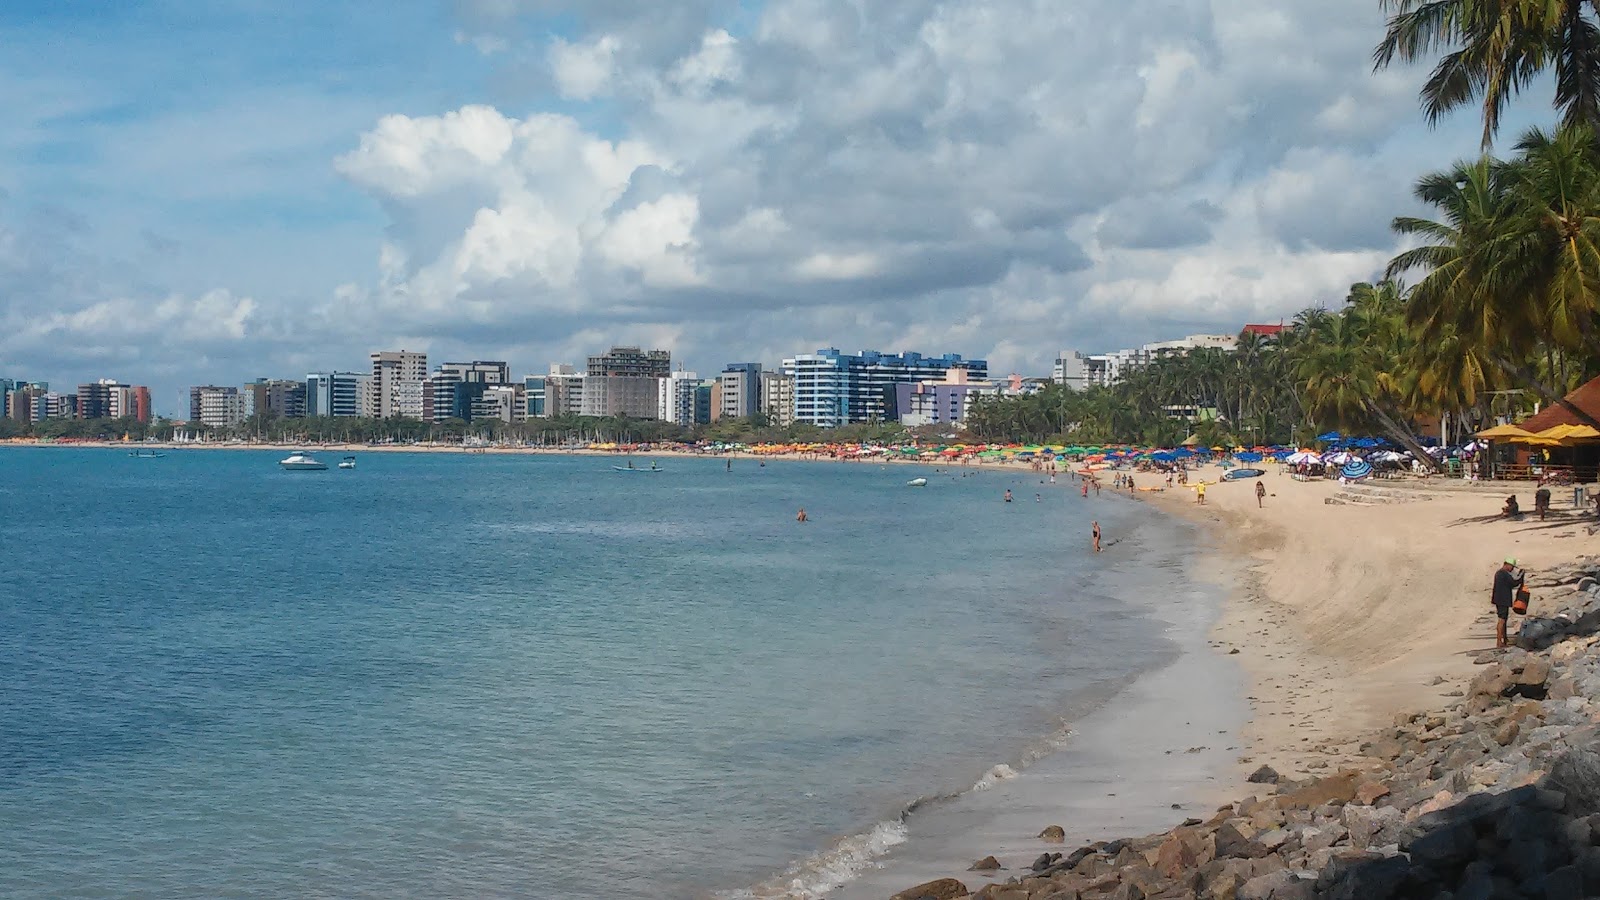 Praia de Pajuçara'in fotoğrafı çok temiz temizlik seviyesi ile